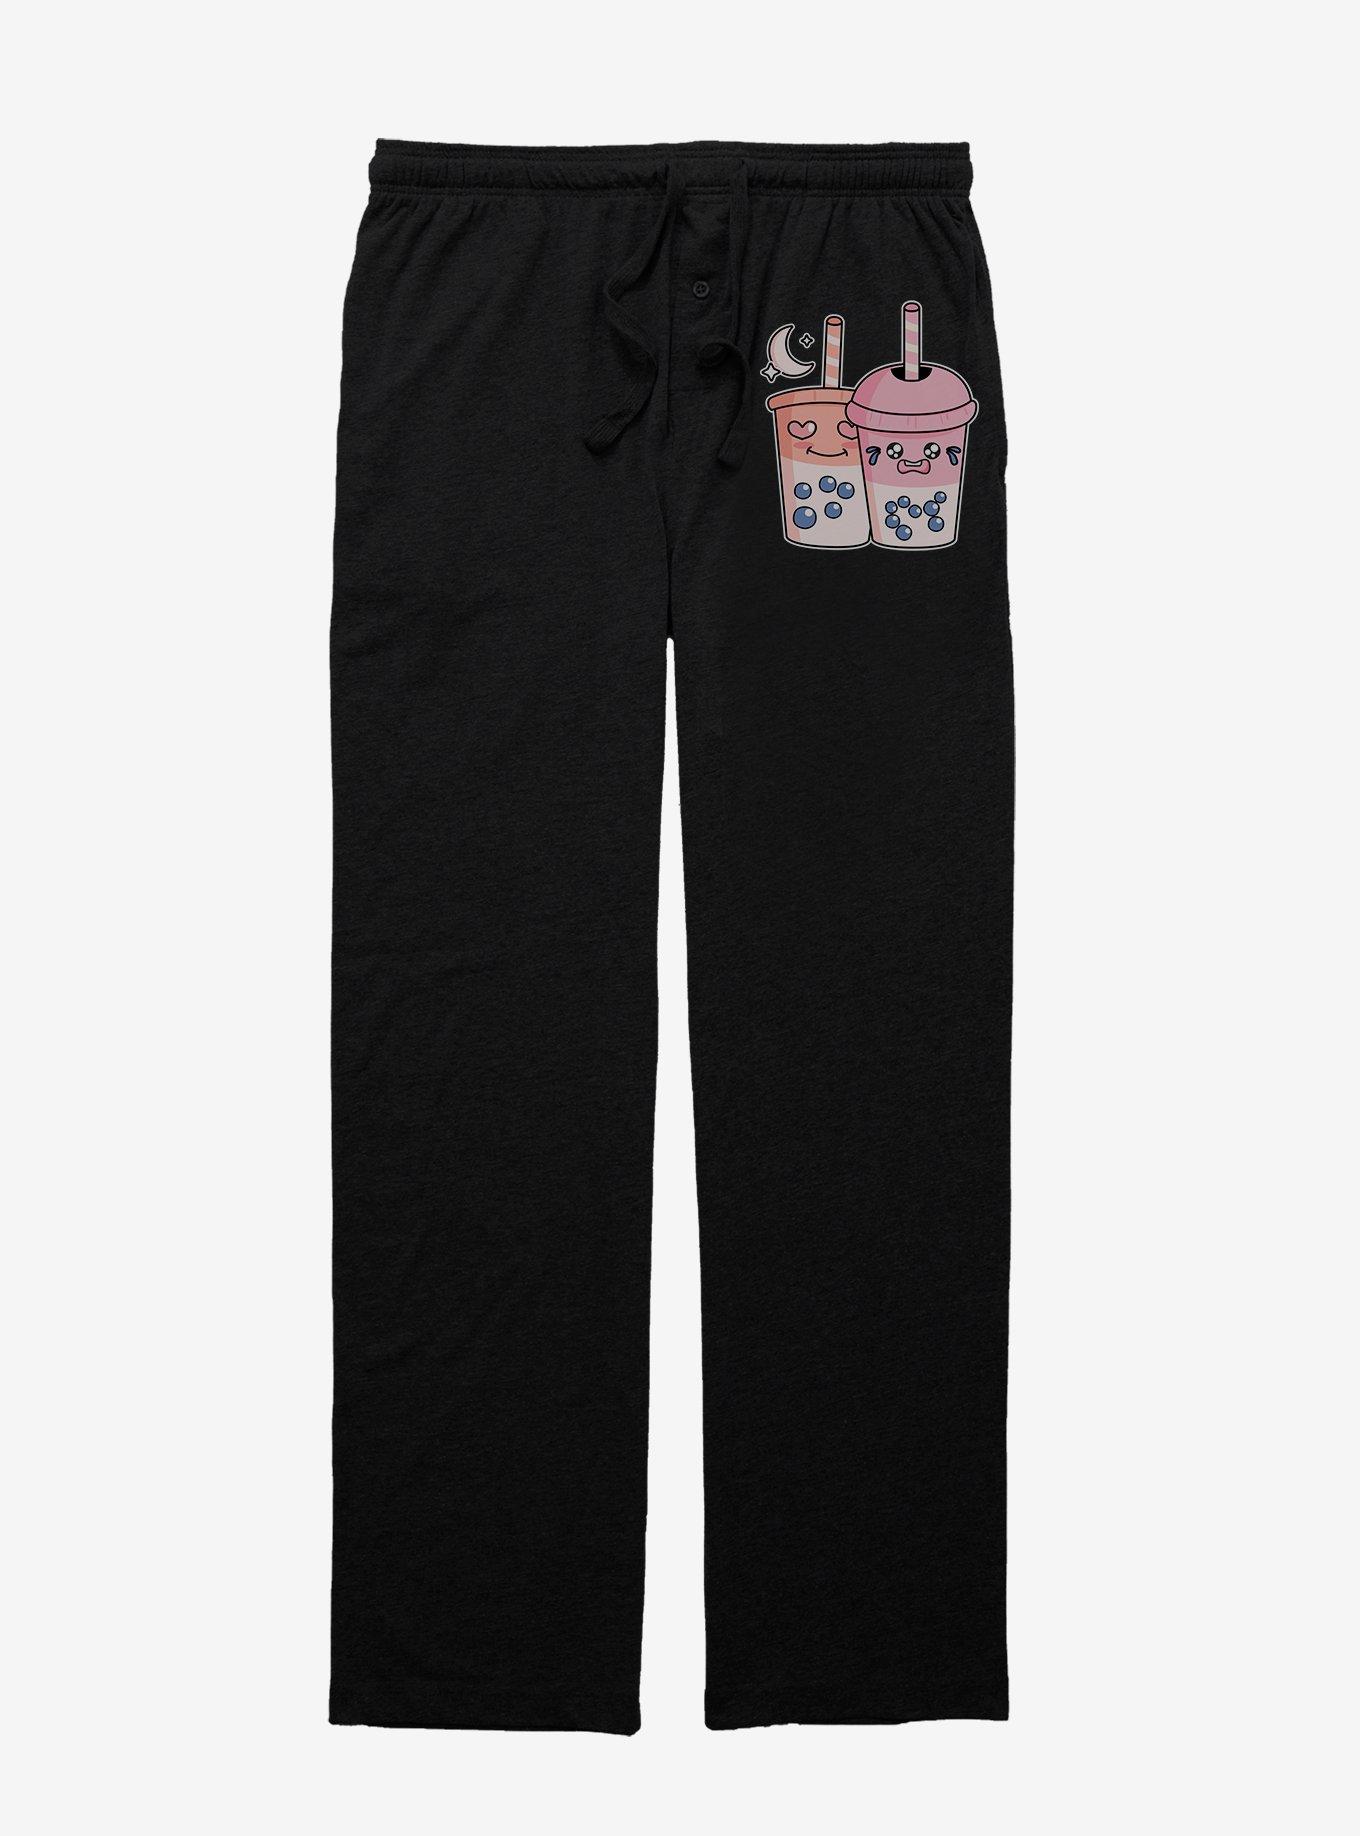 BesTea Pajama Pants, BLACK, hi-res